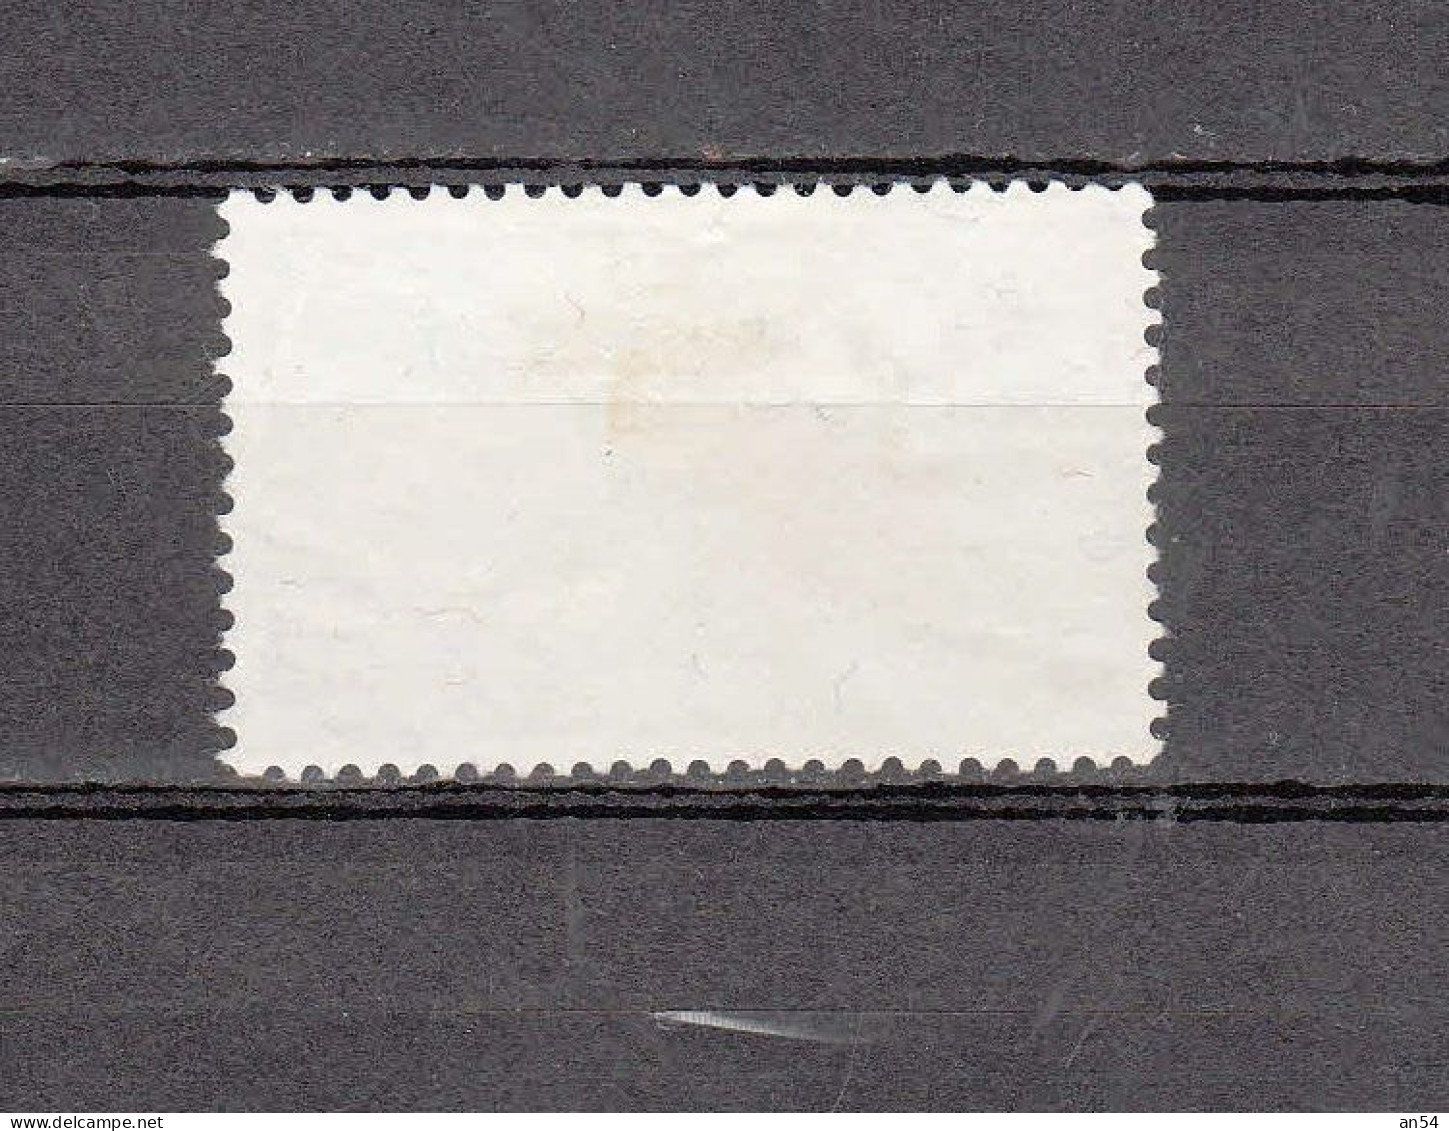 1947   Variété Rayon Manquant  N°  277 Pf.277.2.01   OBLITERE  ( COTE 250.00 )    CATALOGUE SBK - Varietà